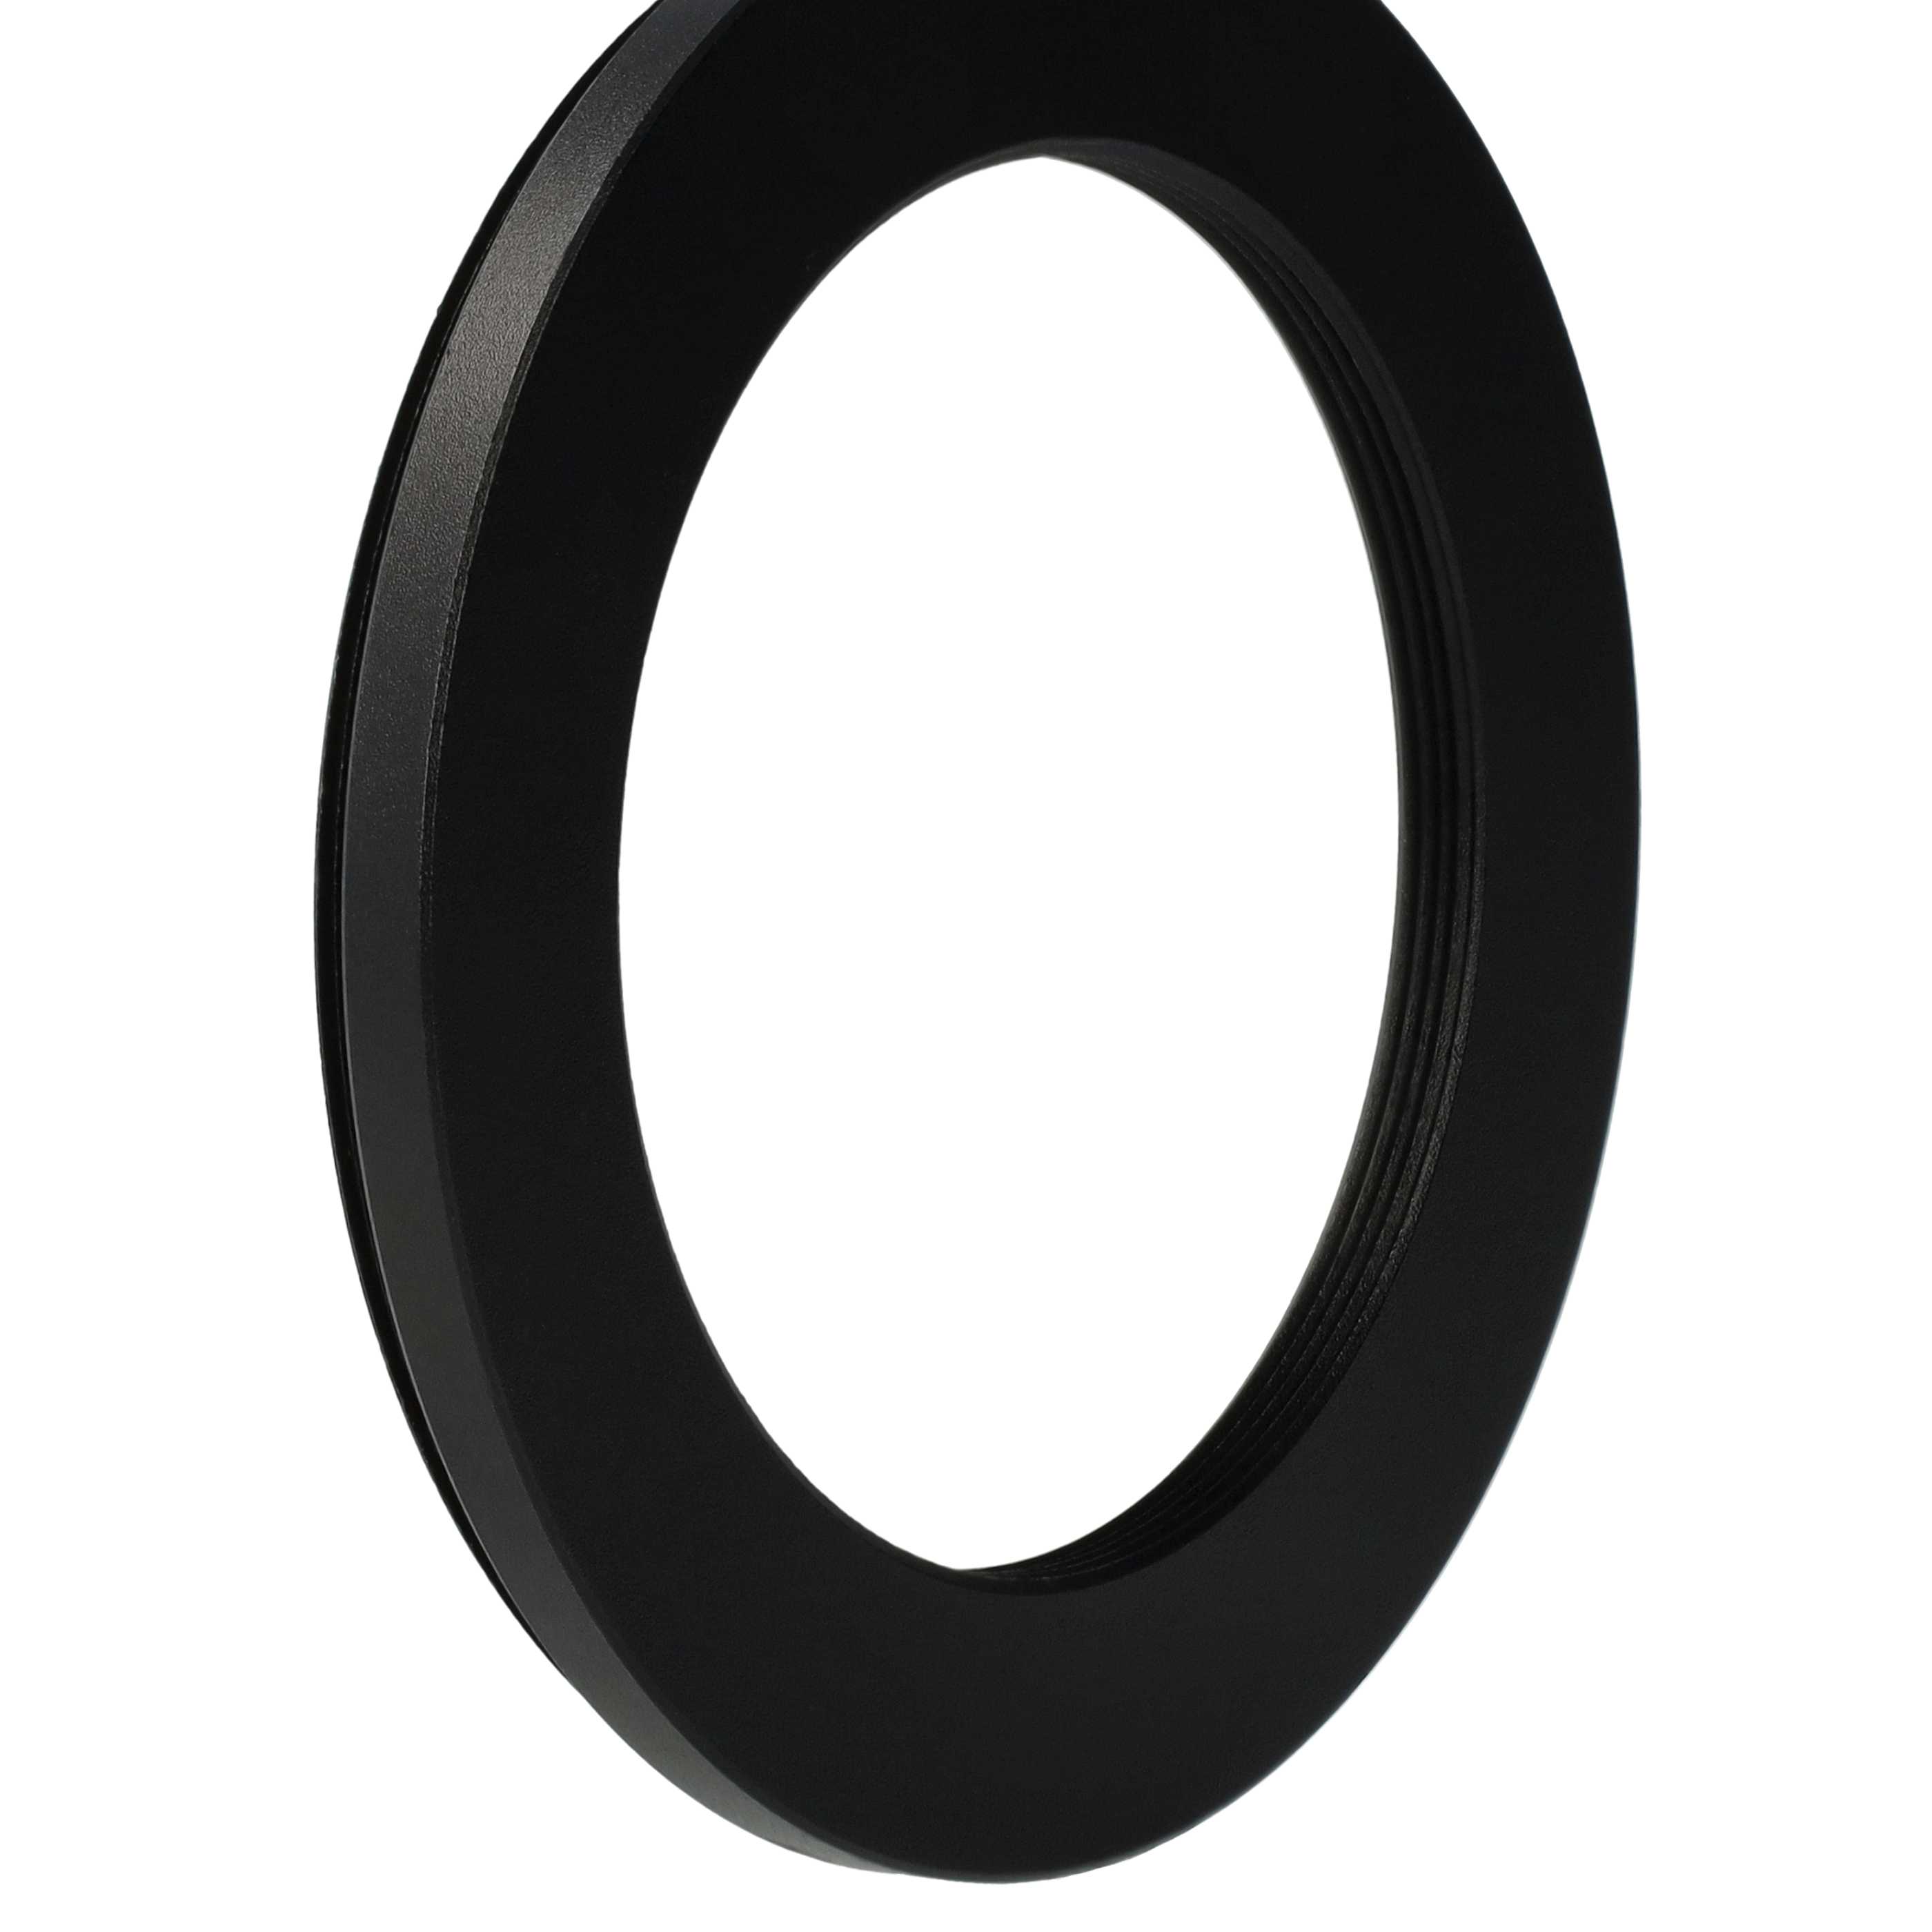 Redukcja filtrowa adapter Step-Down 67 mm - 49 mm pasująca do obiektywu - metal, czarny